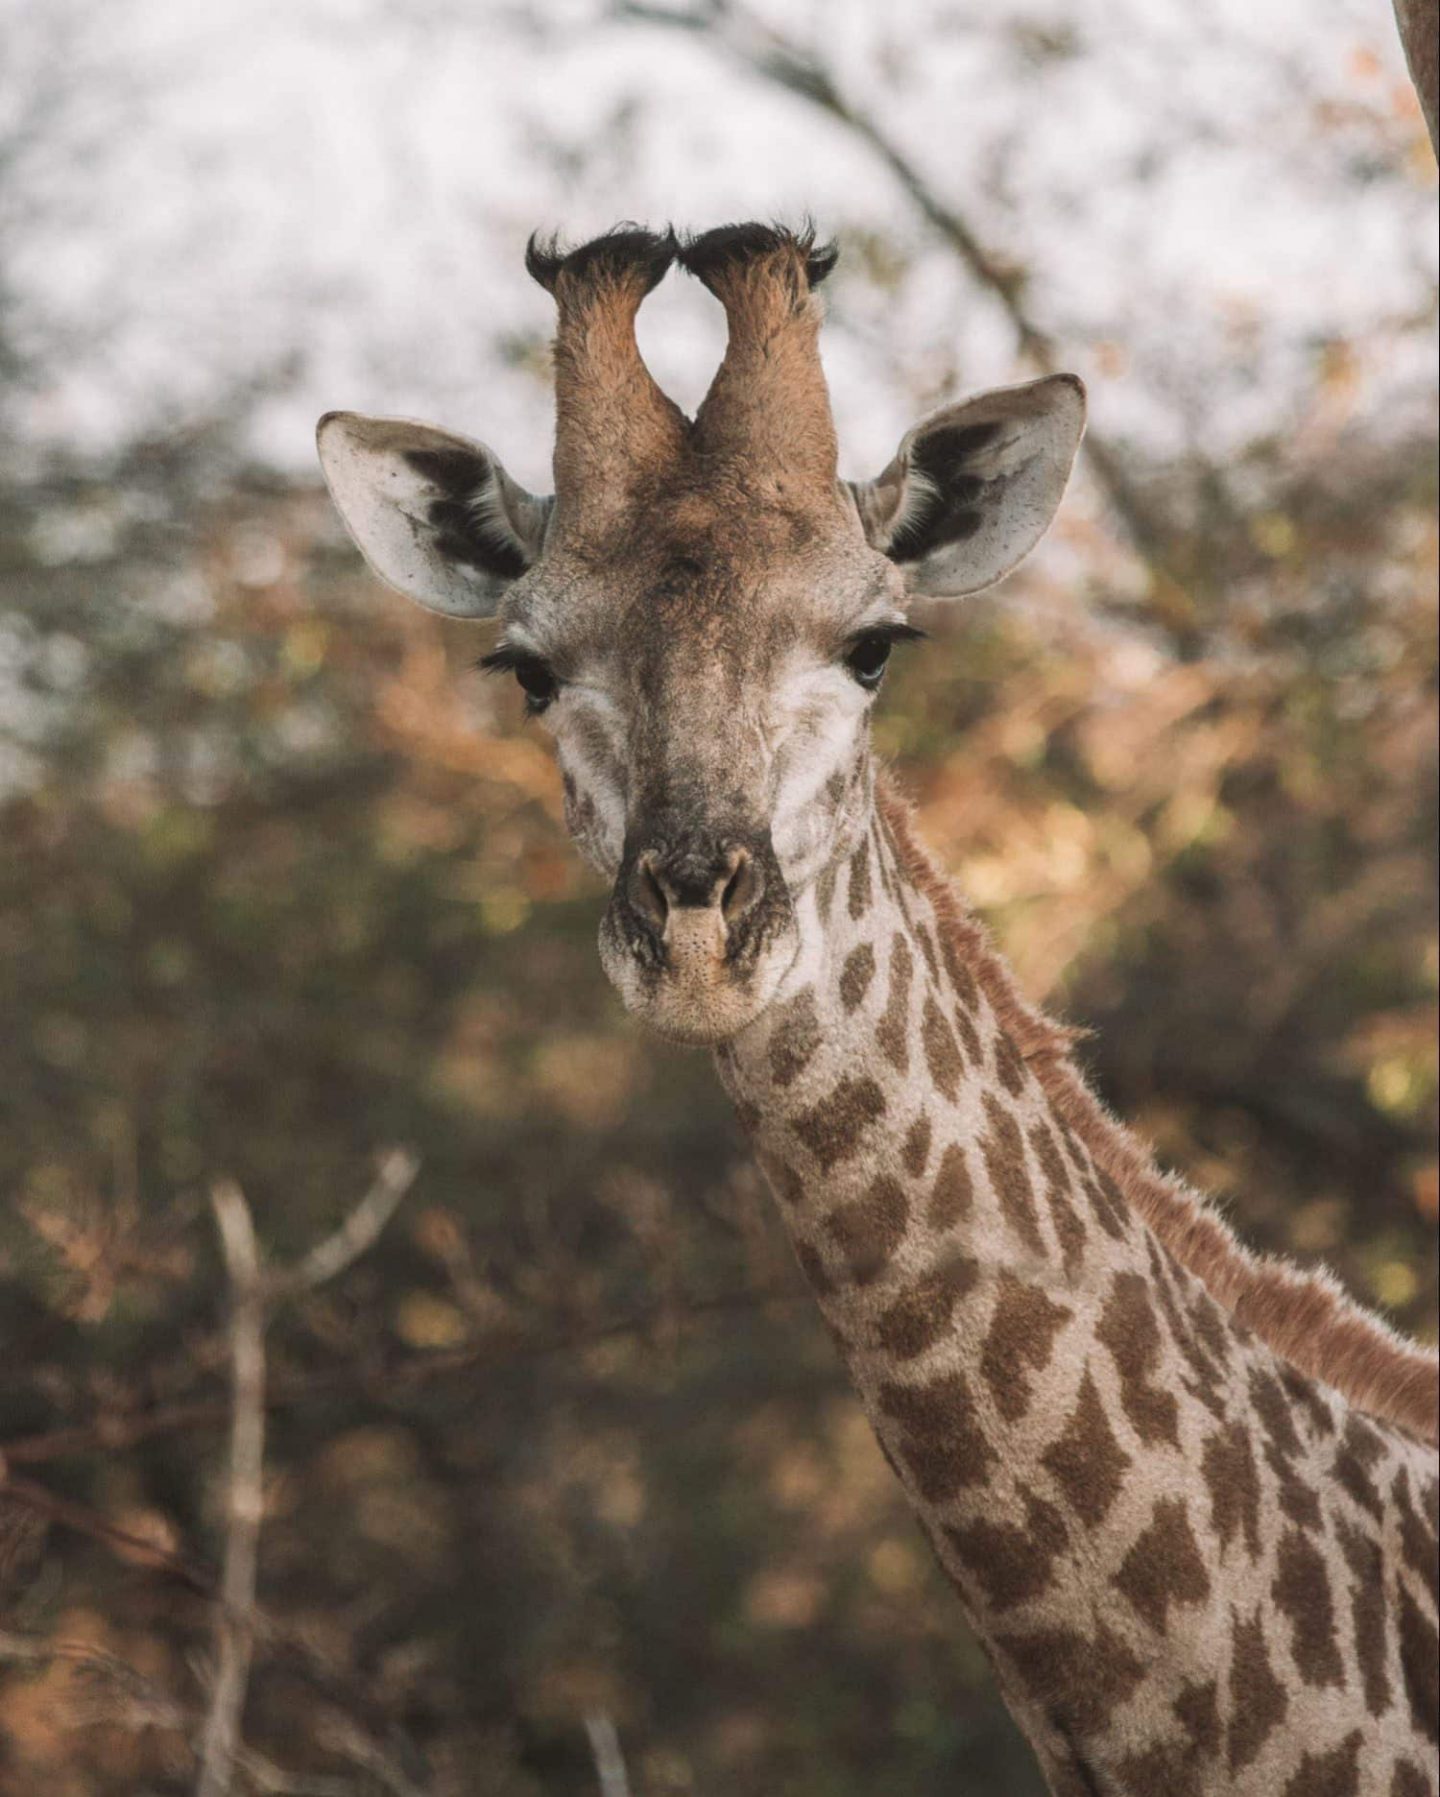 giraffe in kruger